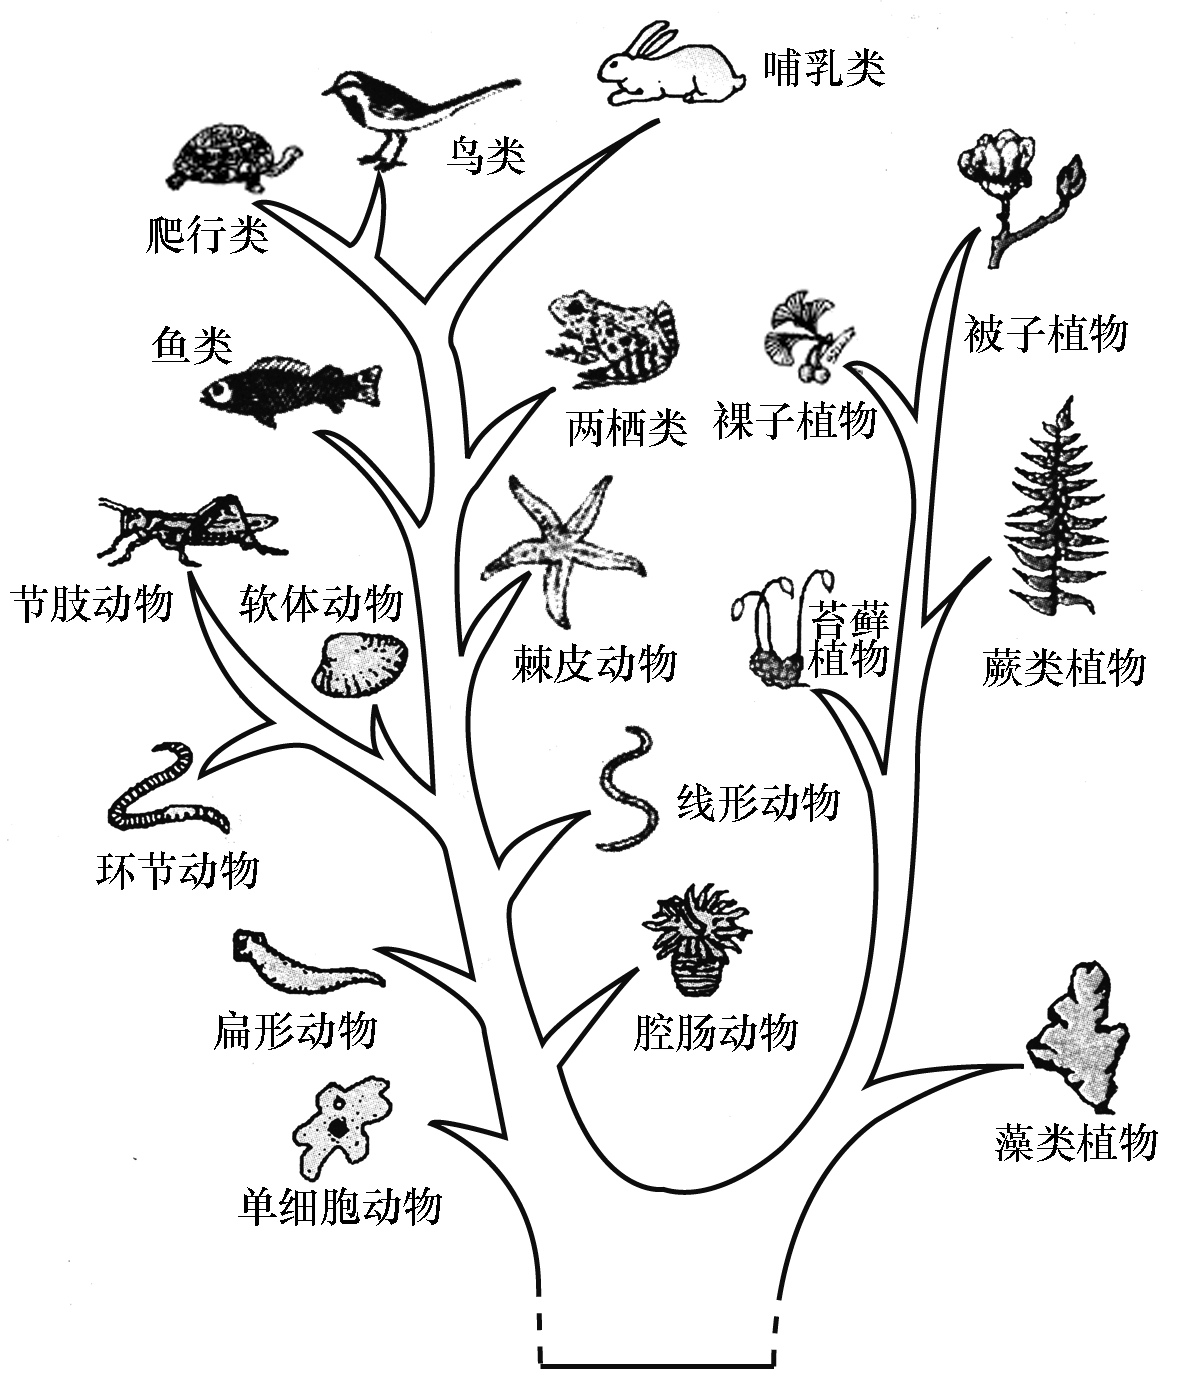 生物进化树手绘图片